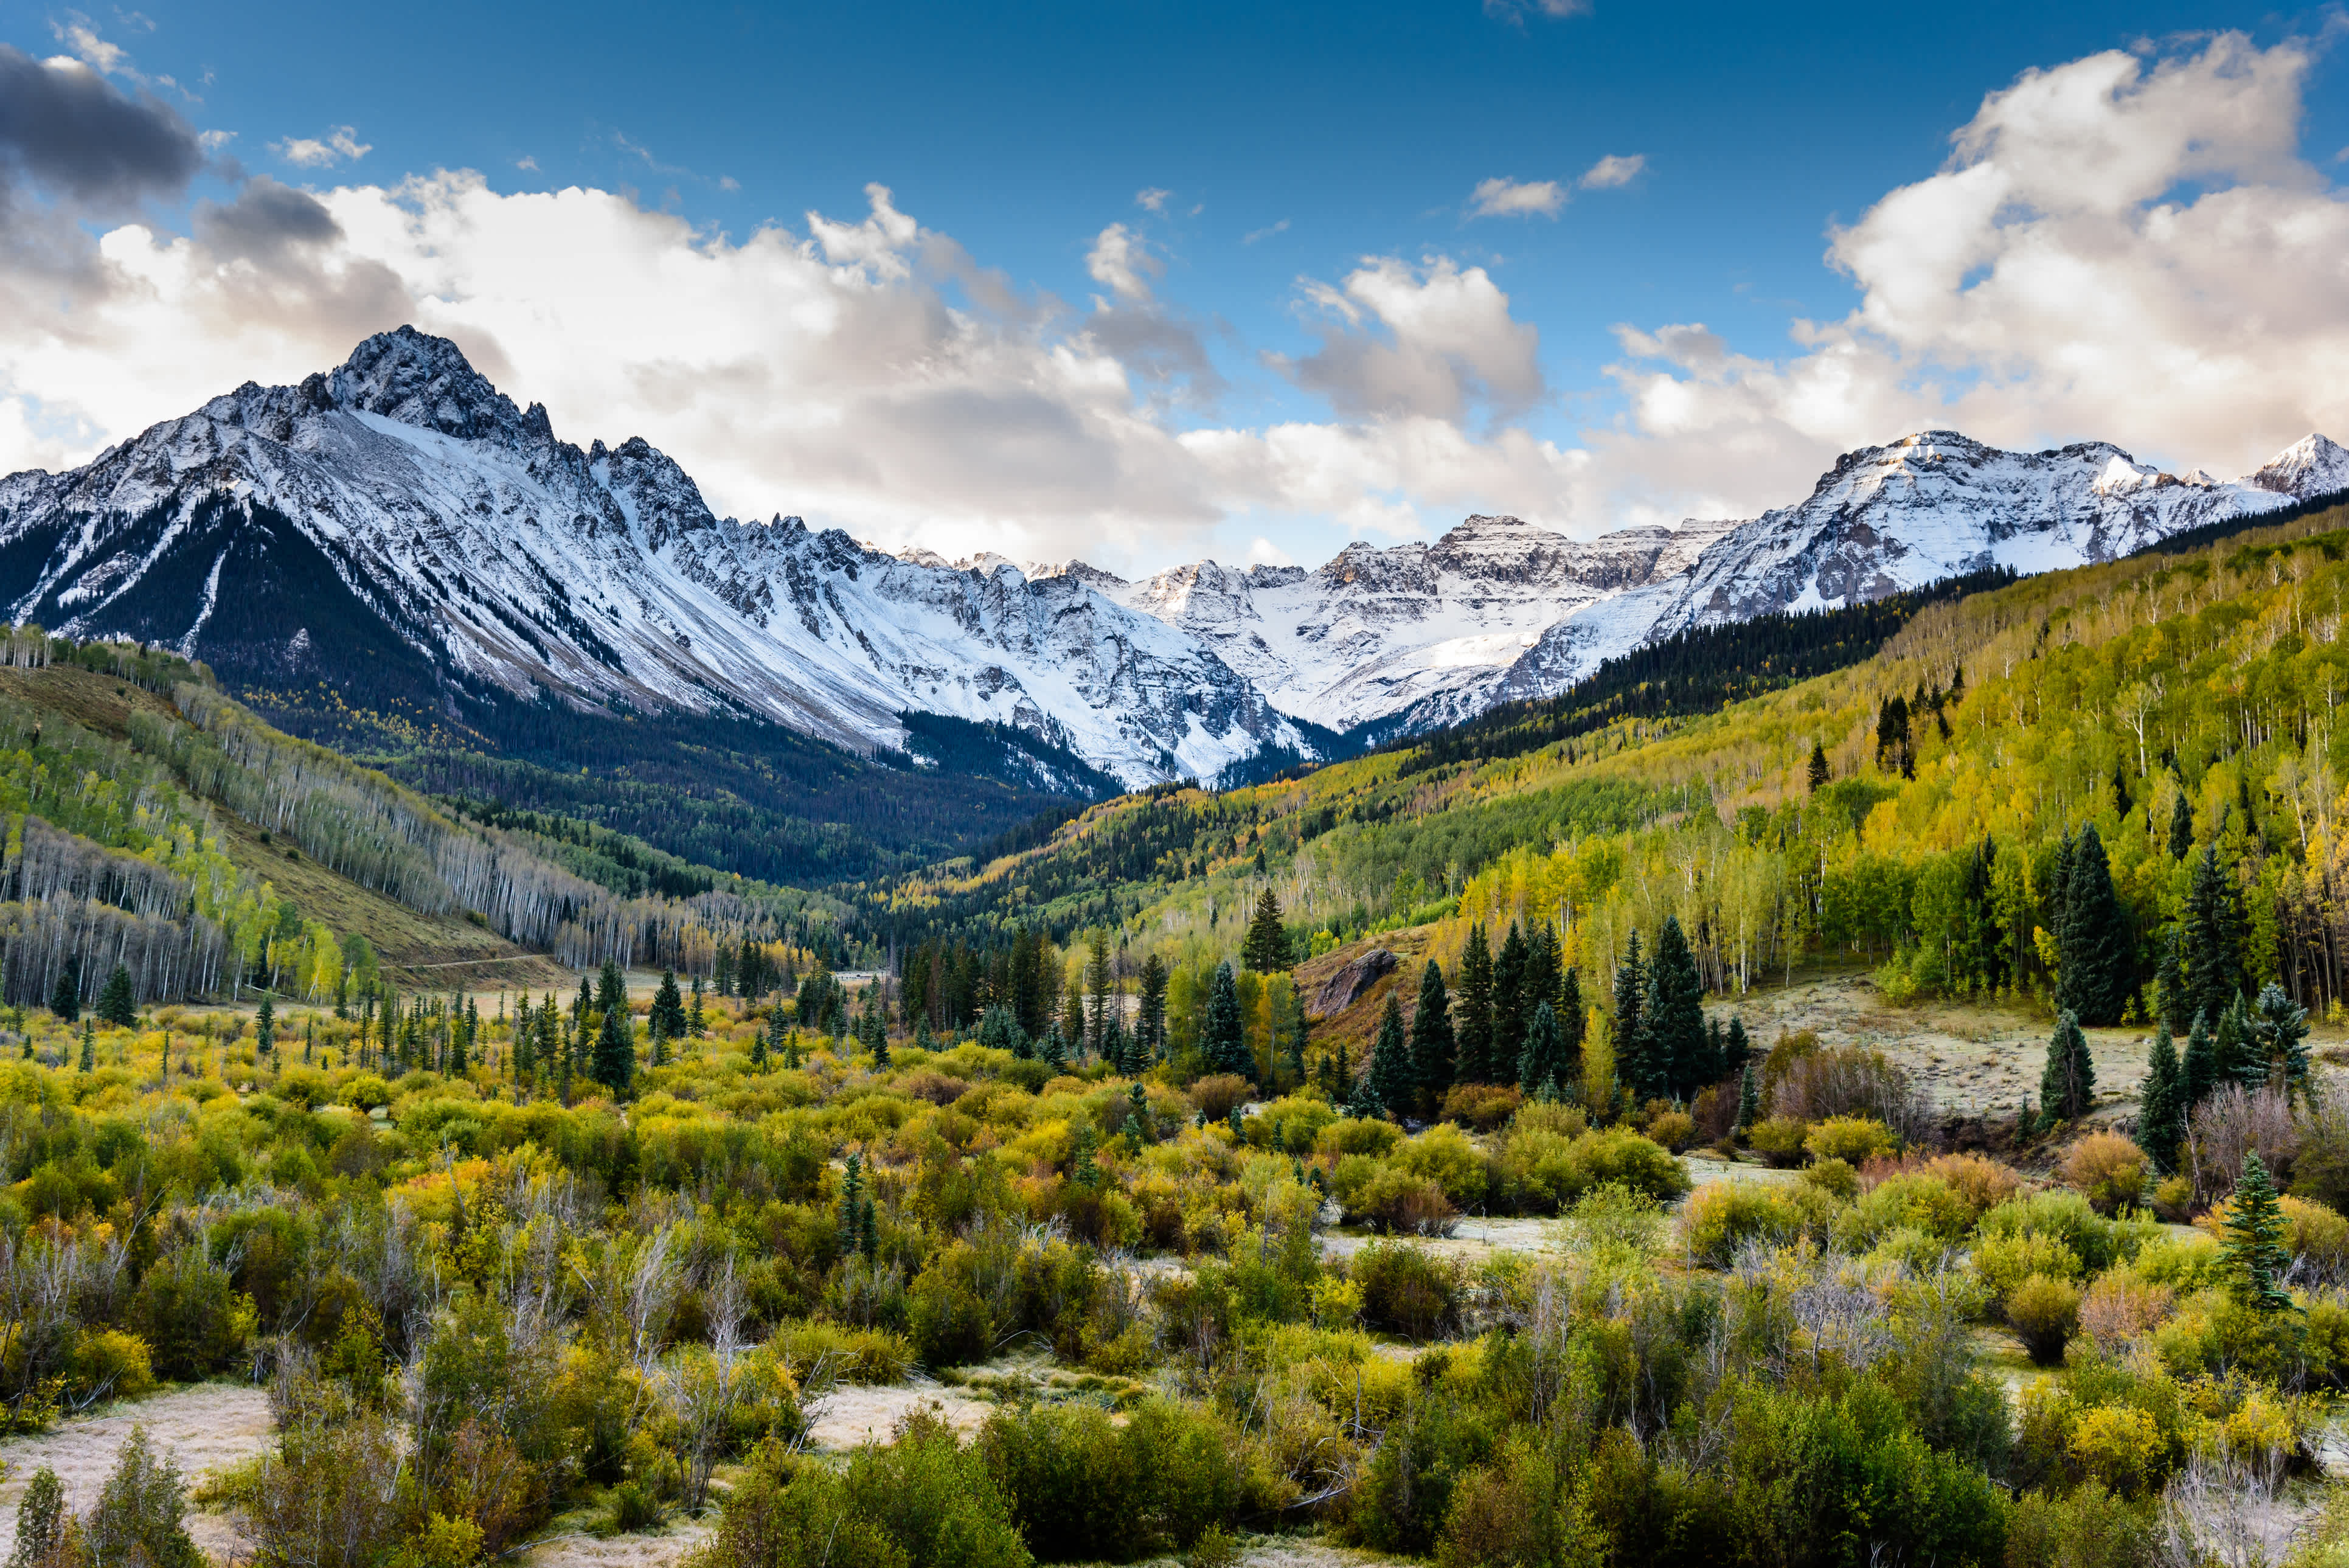 Die landschaftliche Schönheit der Colorado Rocky Mountains an der Grenze von Dallas

